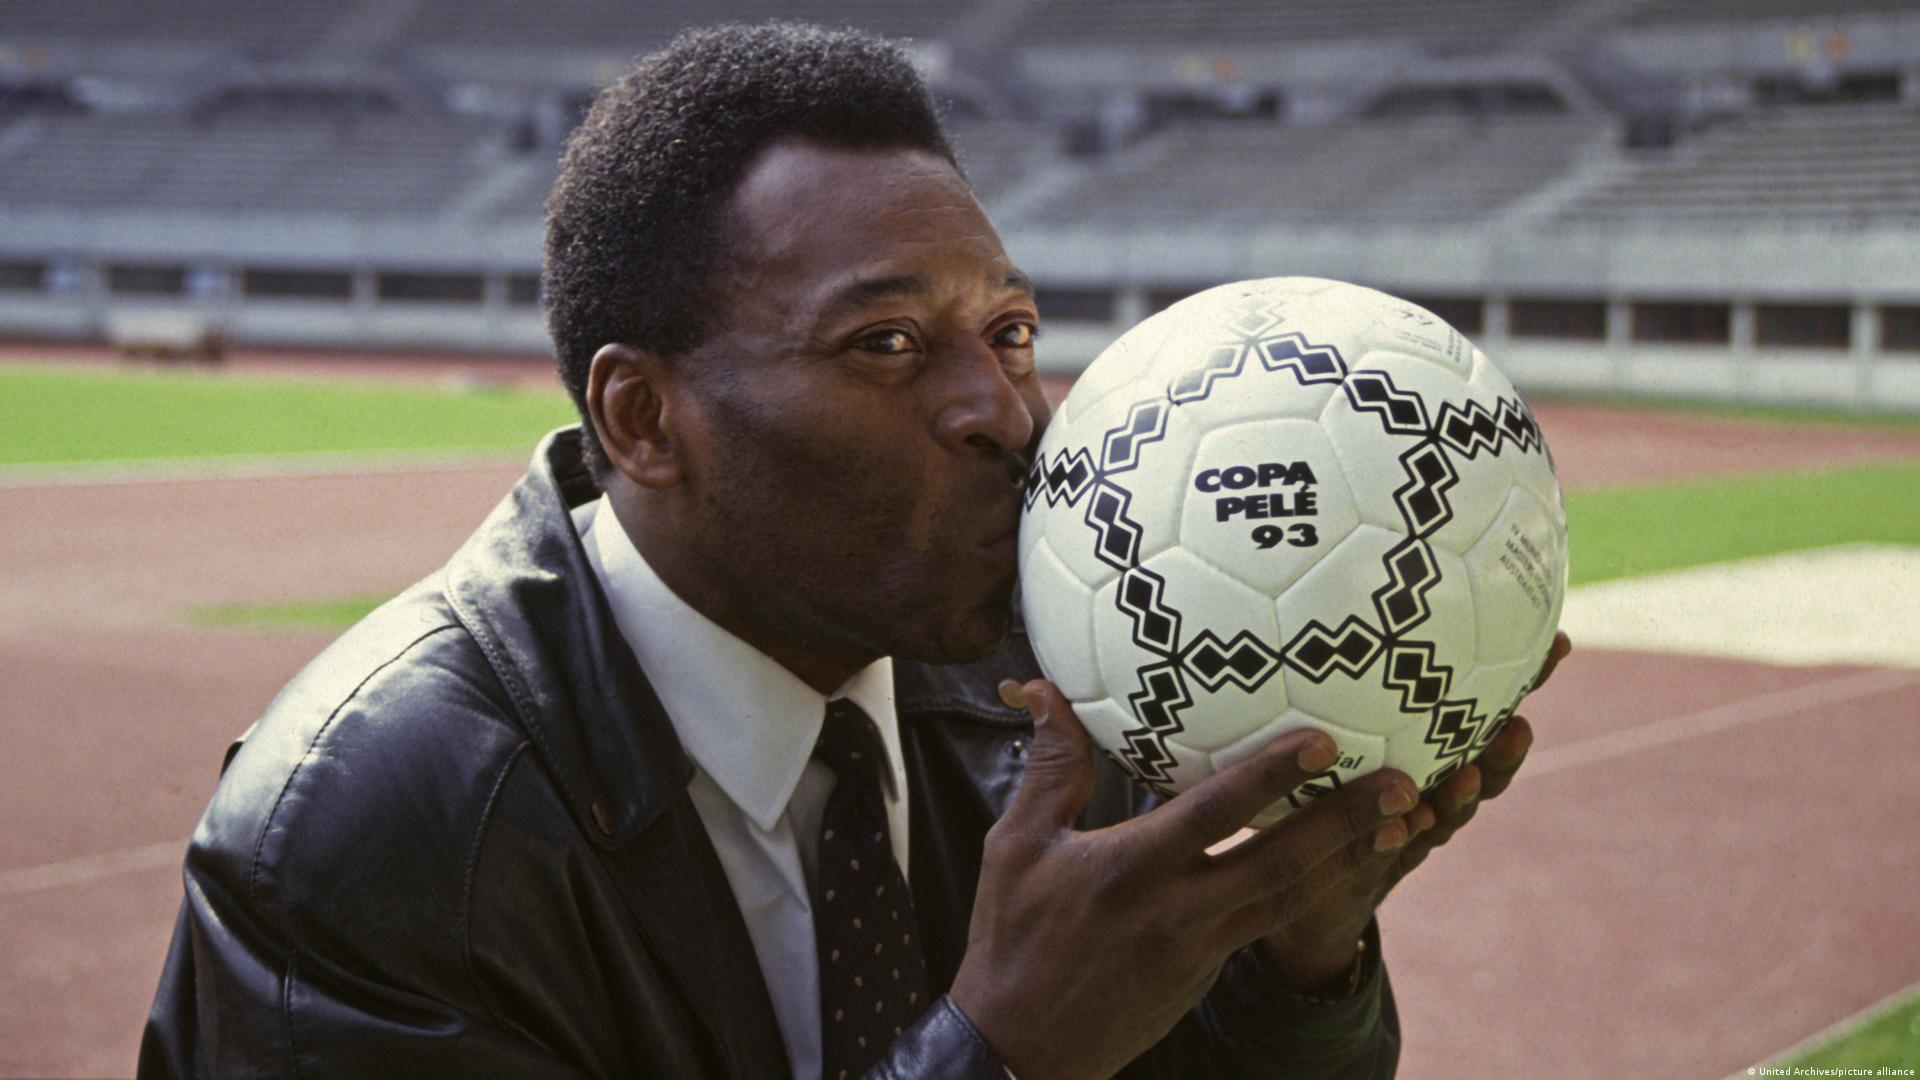 Pelé” foi adicionado ao dicionário de português como um adjetivo. O n